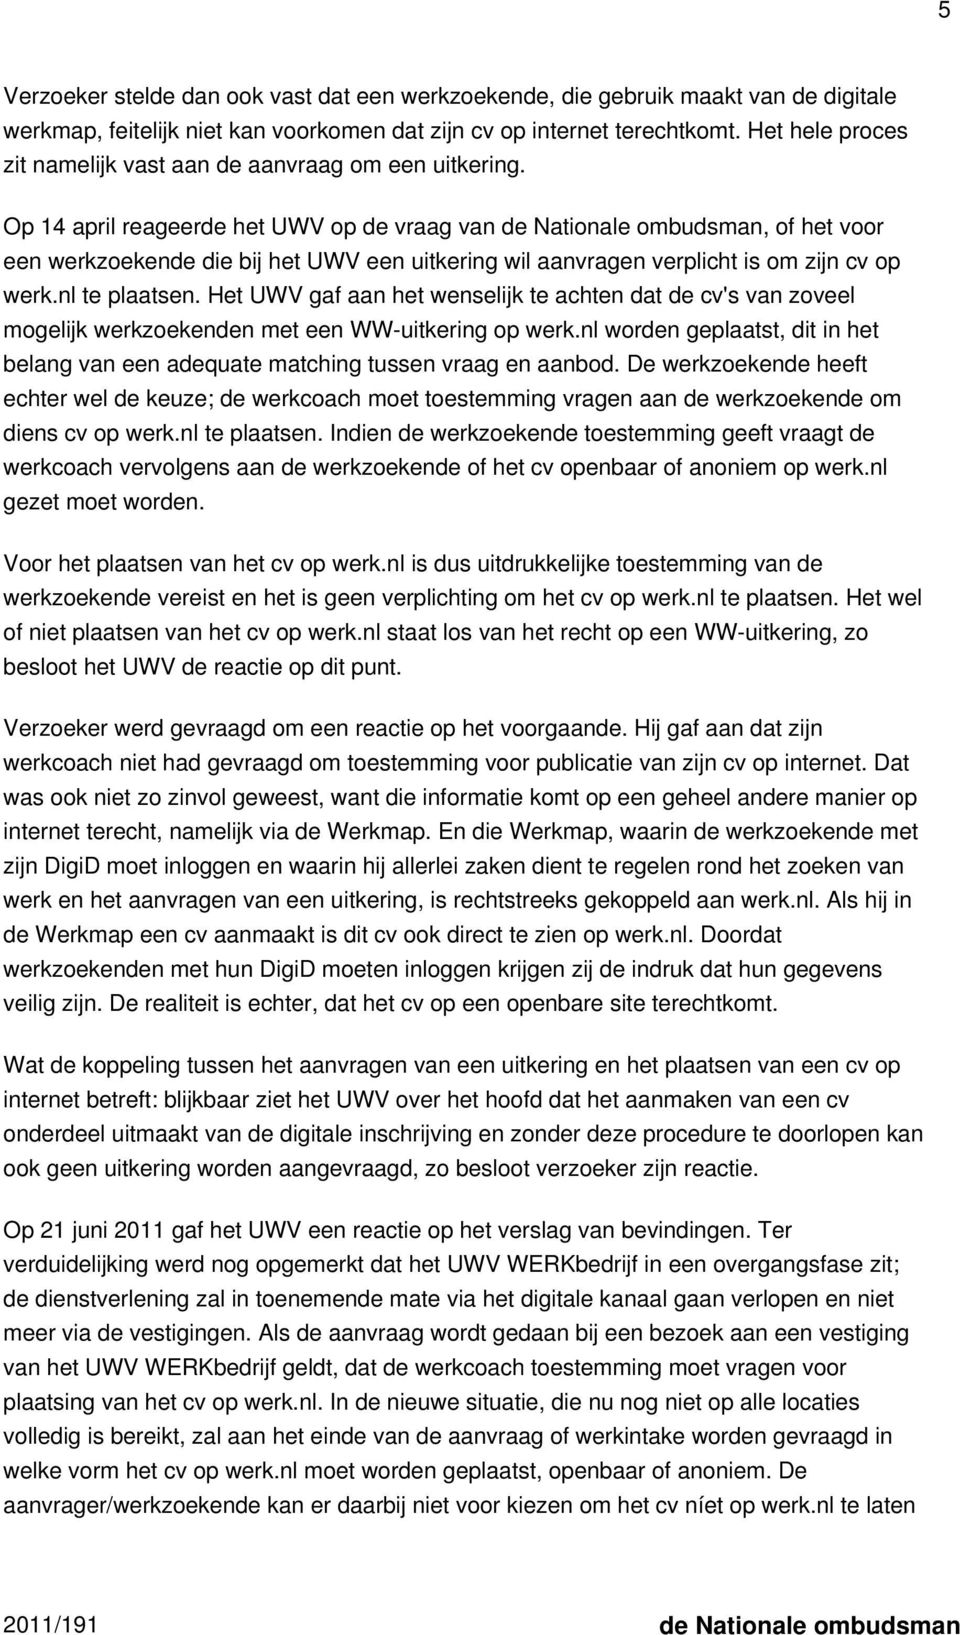 Op 14 april reageerde het UWV op de vraag van de Nationale ombudsman, of het voor een werkzoekende die bij het UWV een uitkering wil aanvragen verplicht is om zijn cv op werk.nl te plaatsen.